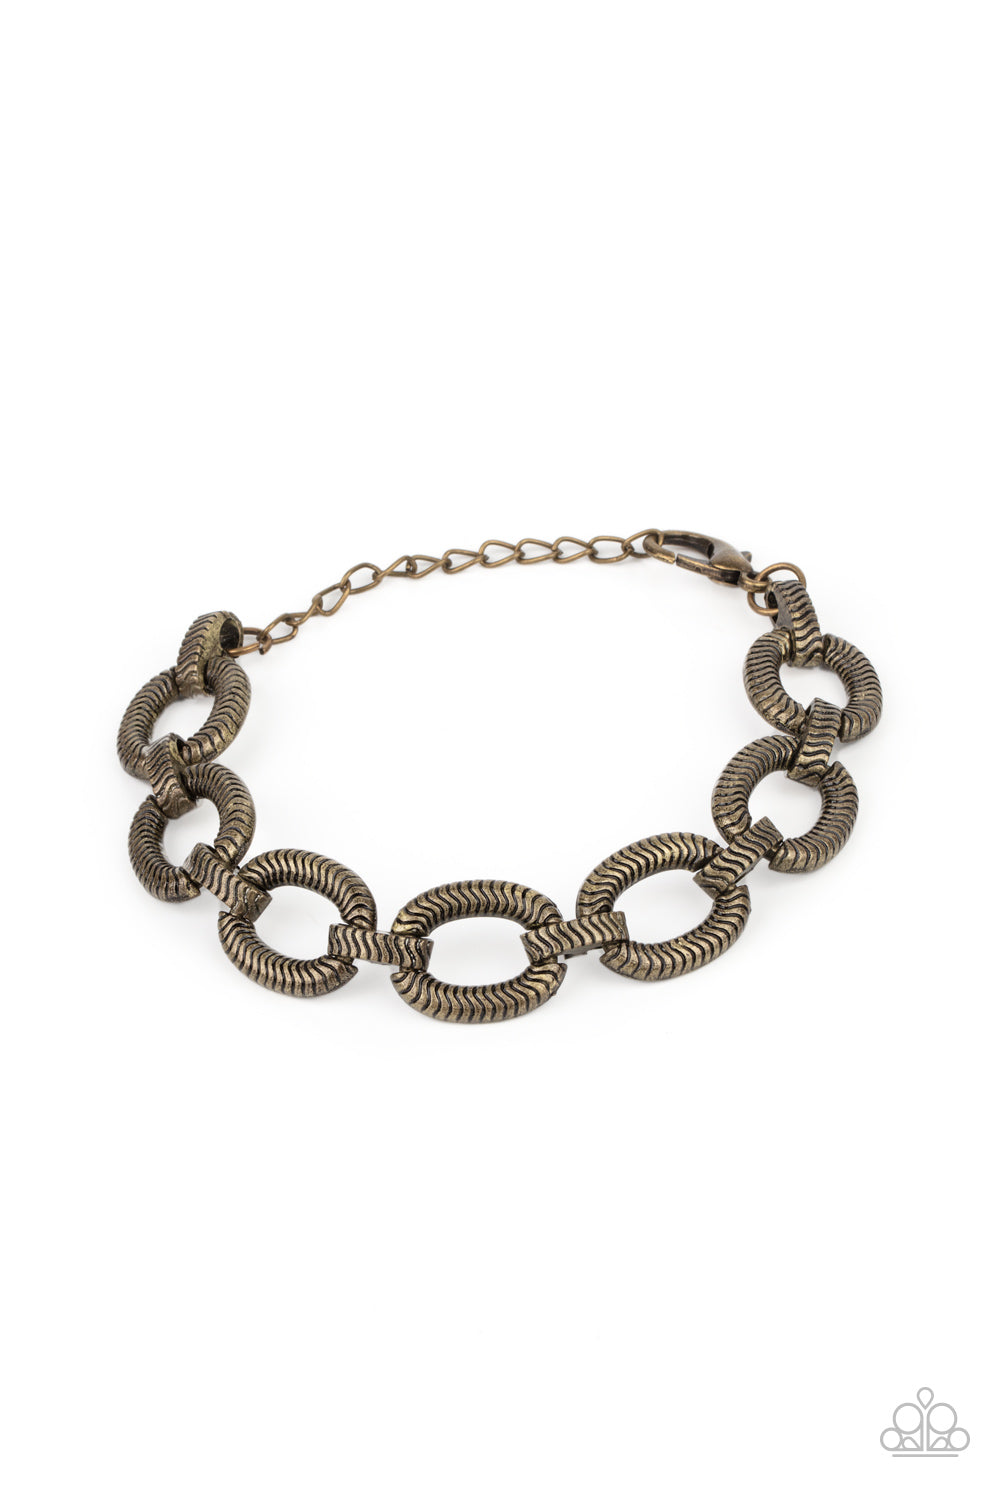 Industrial Amazon - Brass Bracelet freeshipping - JewLz4u Gemstone Gallery